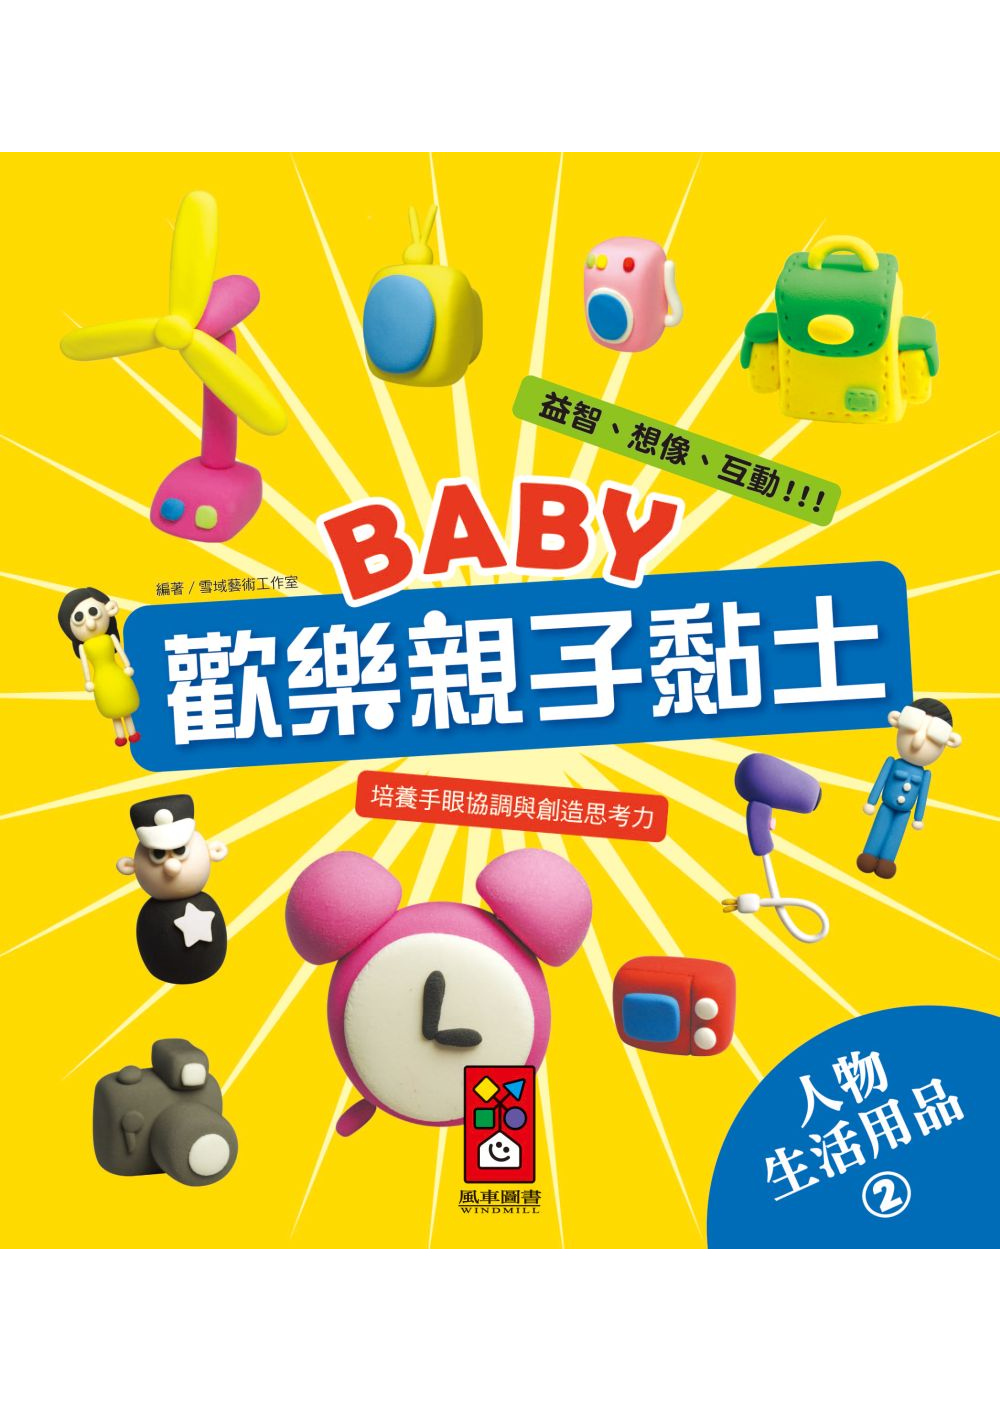 人物、生活用品2：Baby歡樂親子黏土(限台灣)